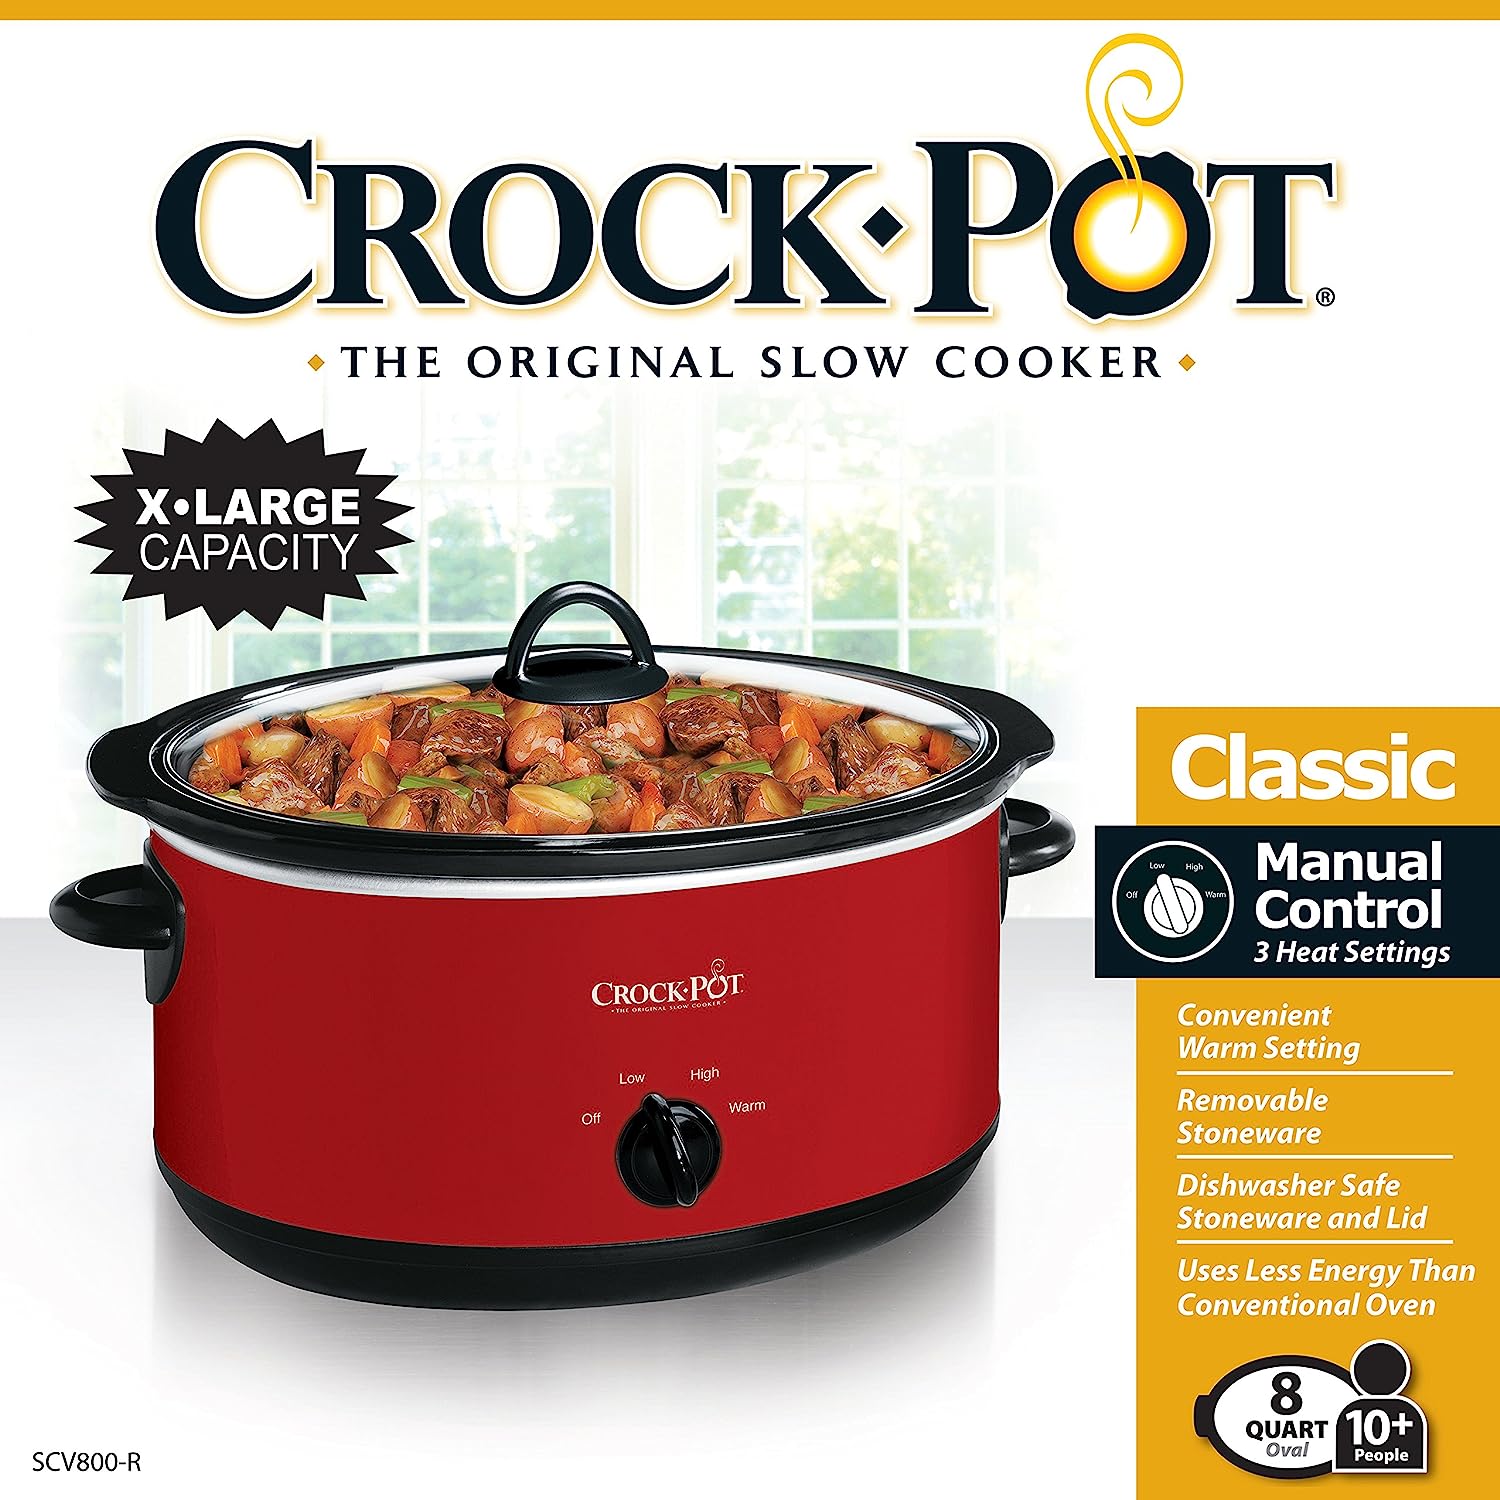 Crock-Pot 4-qt. Express Crock Pressure Cooker